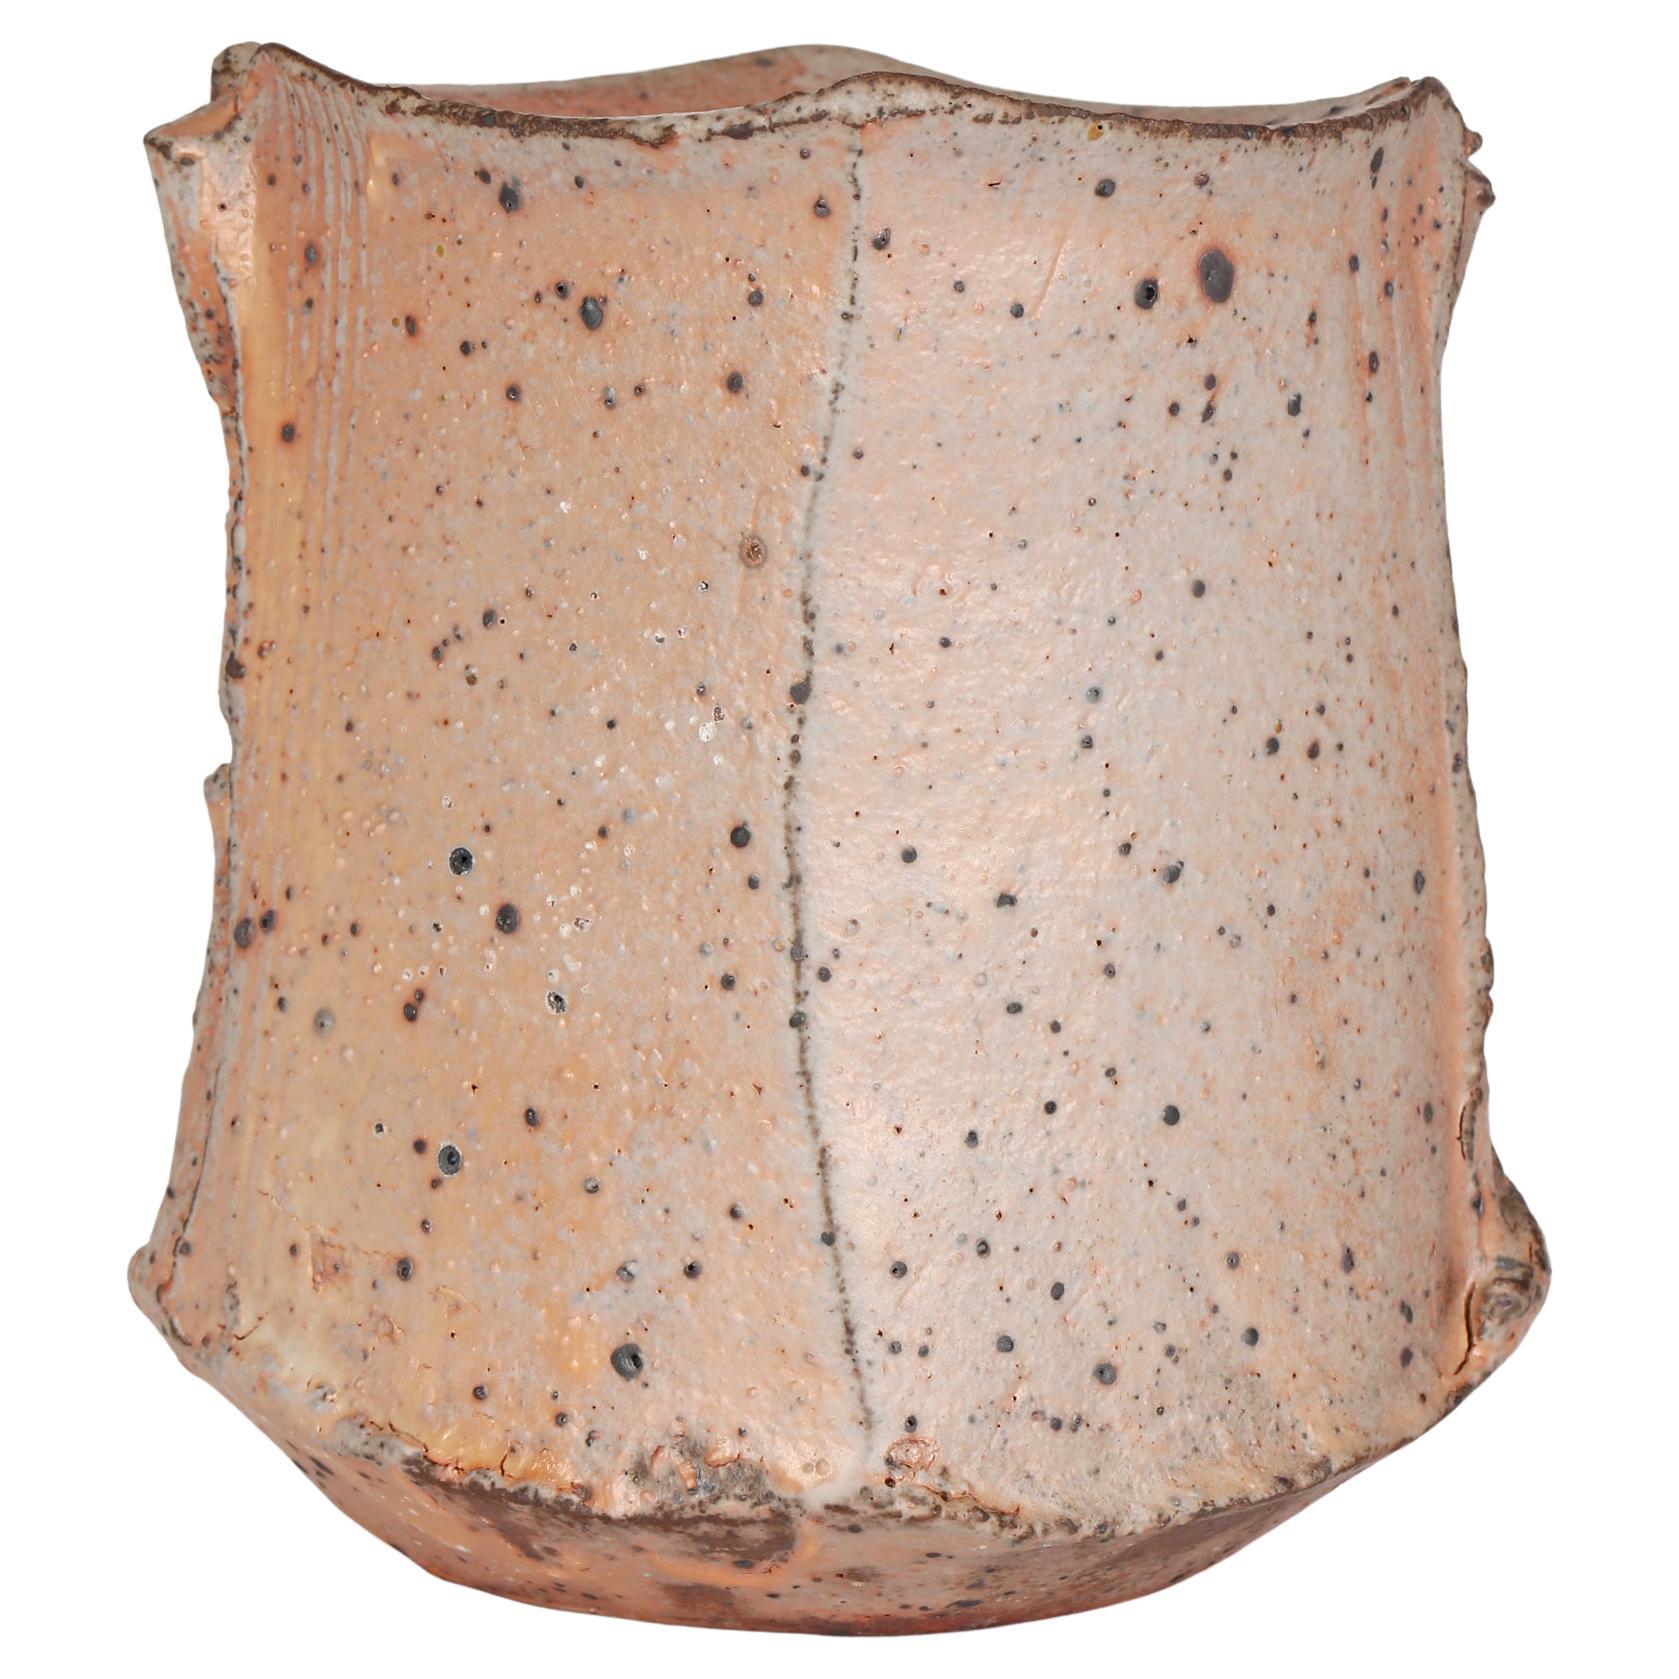 Vase en grès grec Katerina Evangelidou, fabriqué à la main dans un studio de poterie